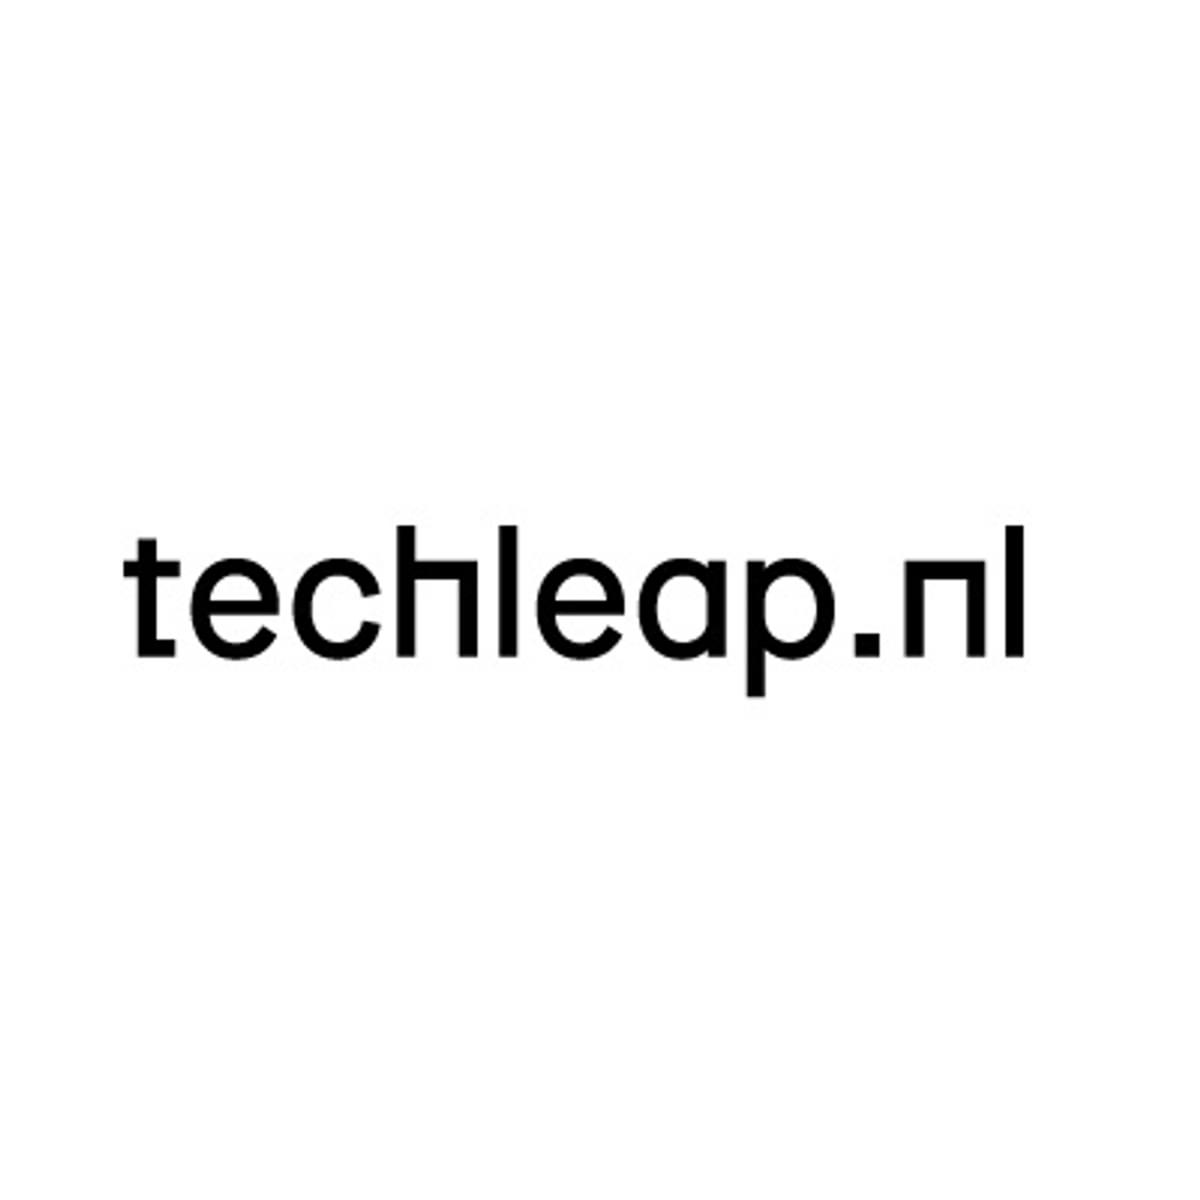 Techleap.nl gaat thematisch werken image